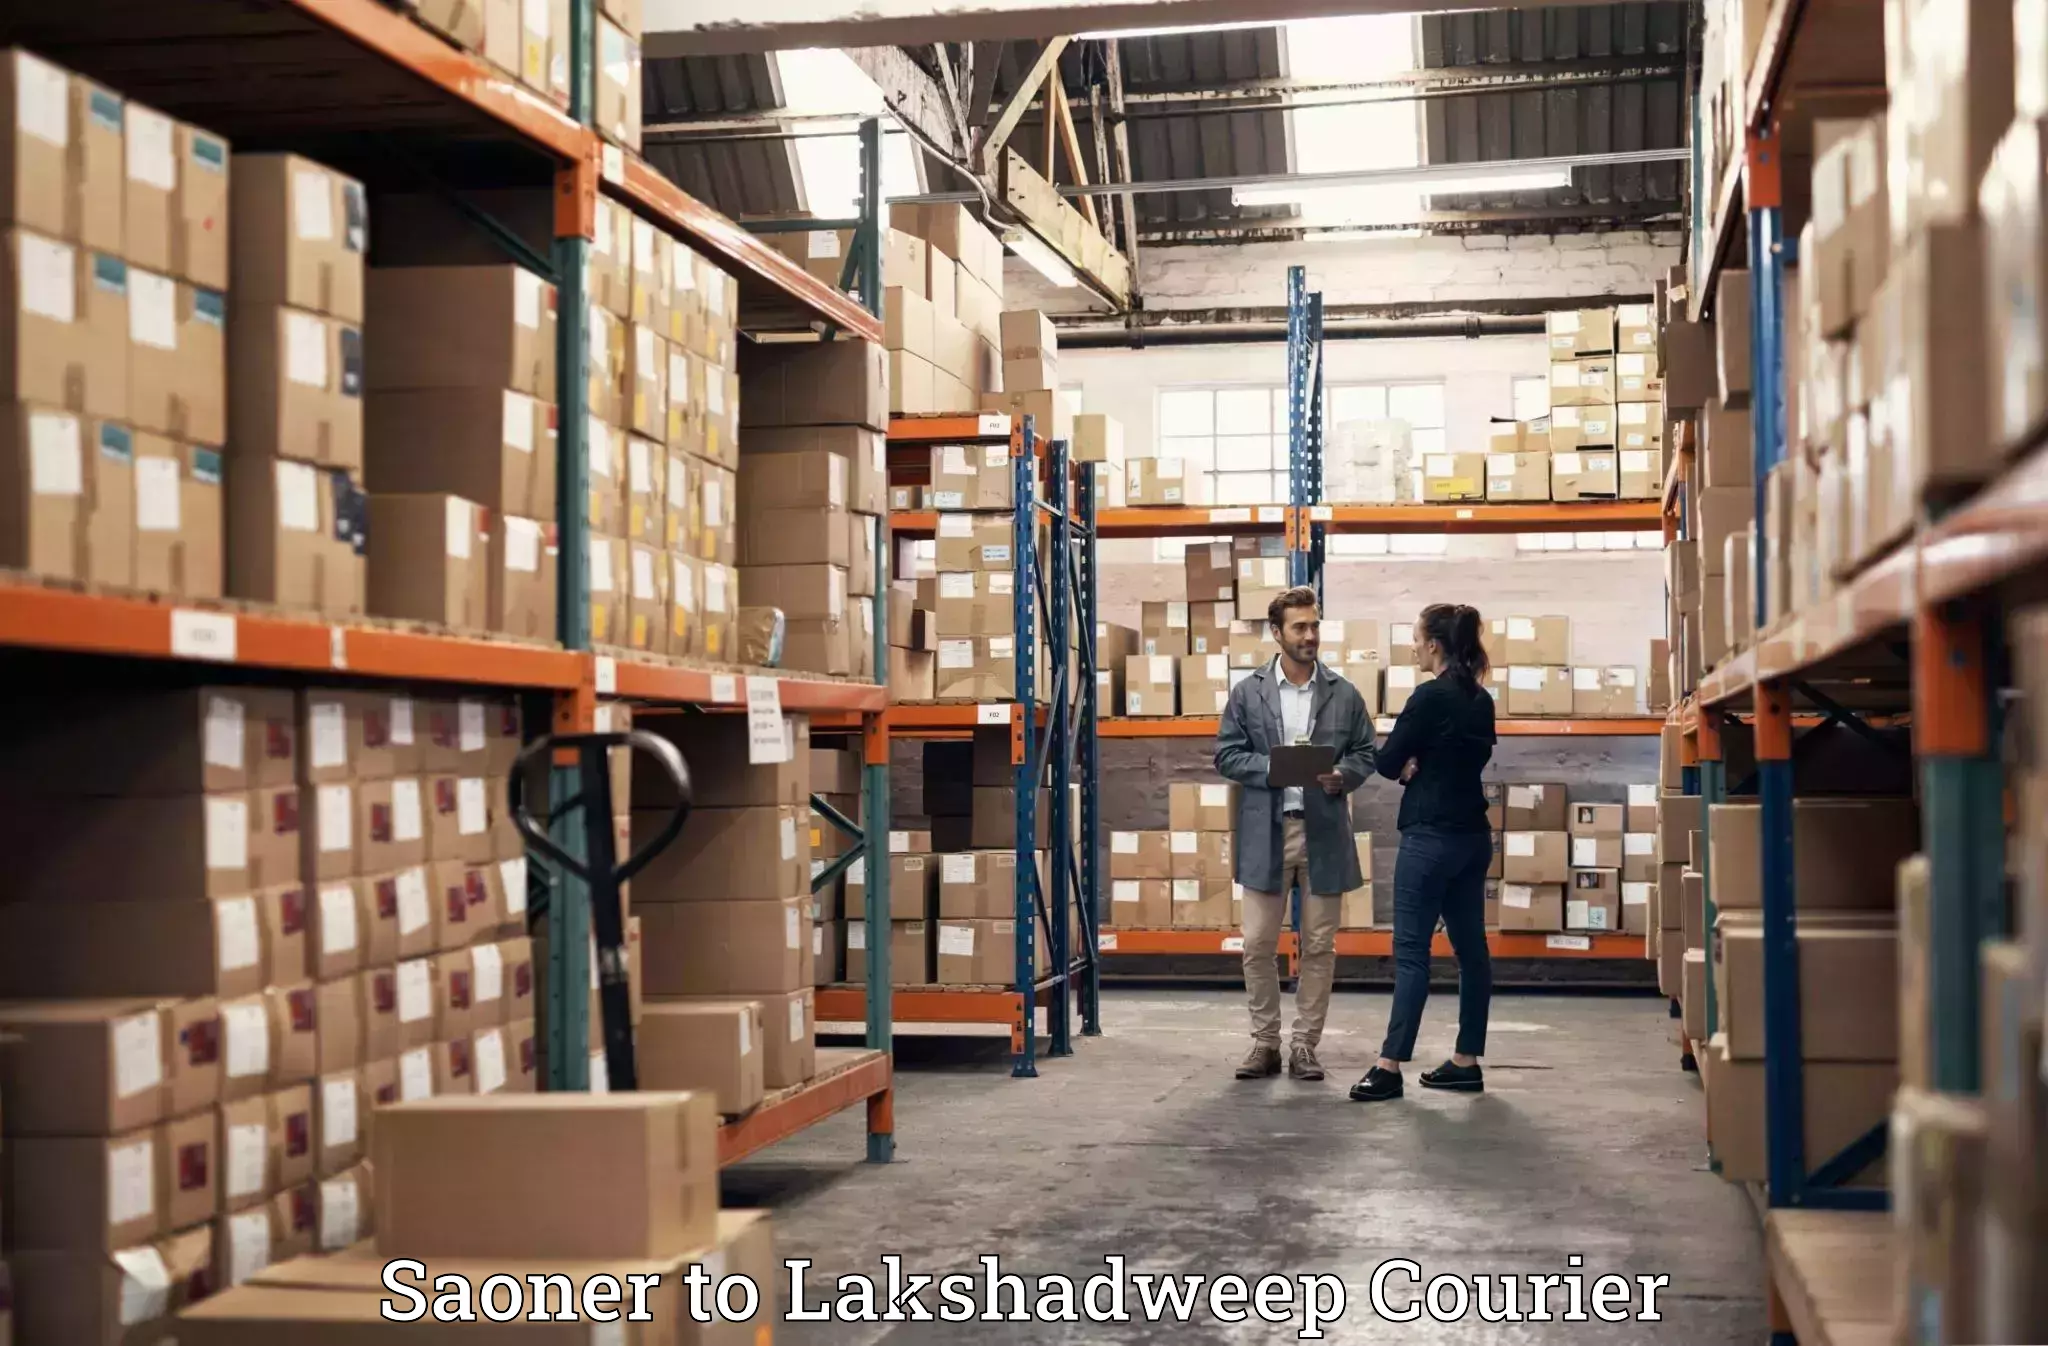 Baggage shipping experts Saoner to Lakshadweep